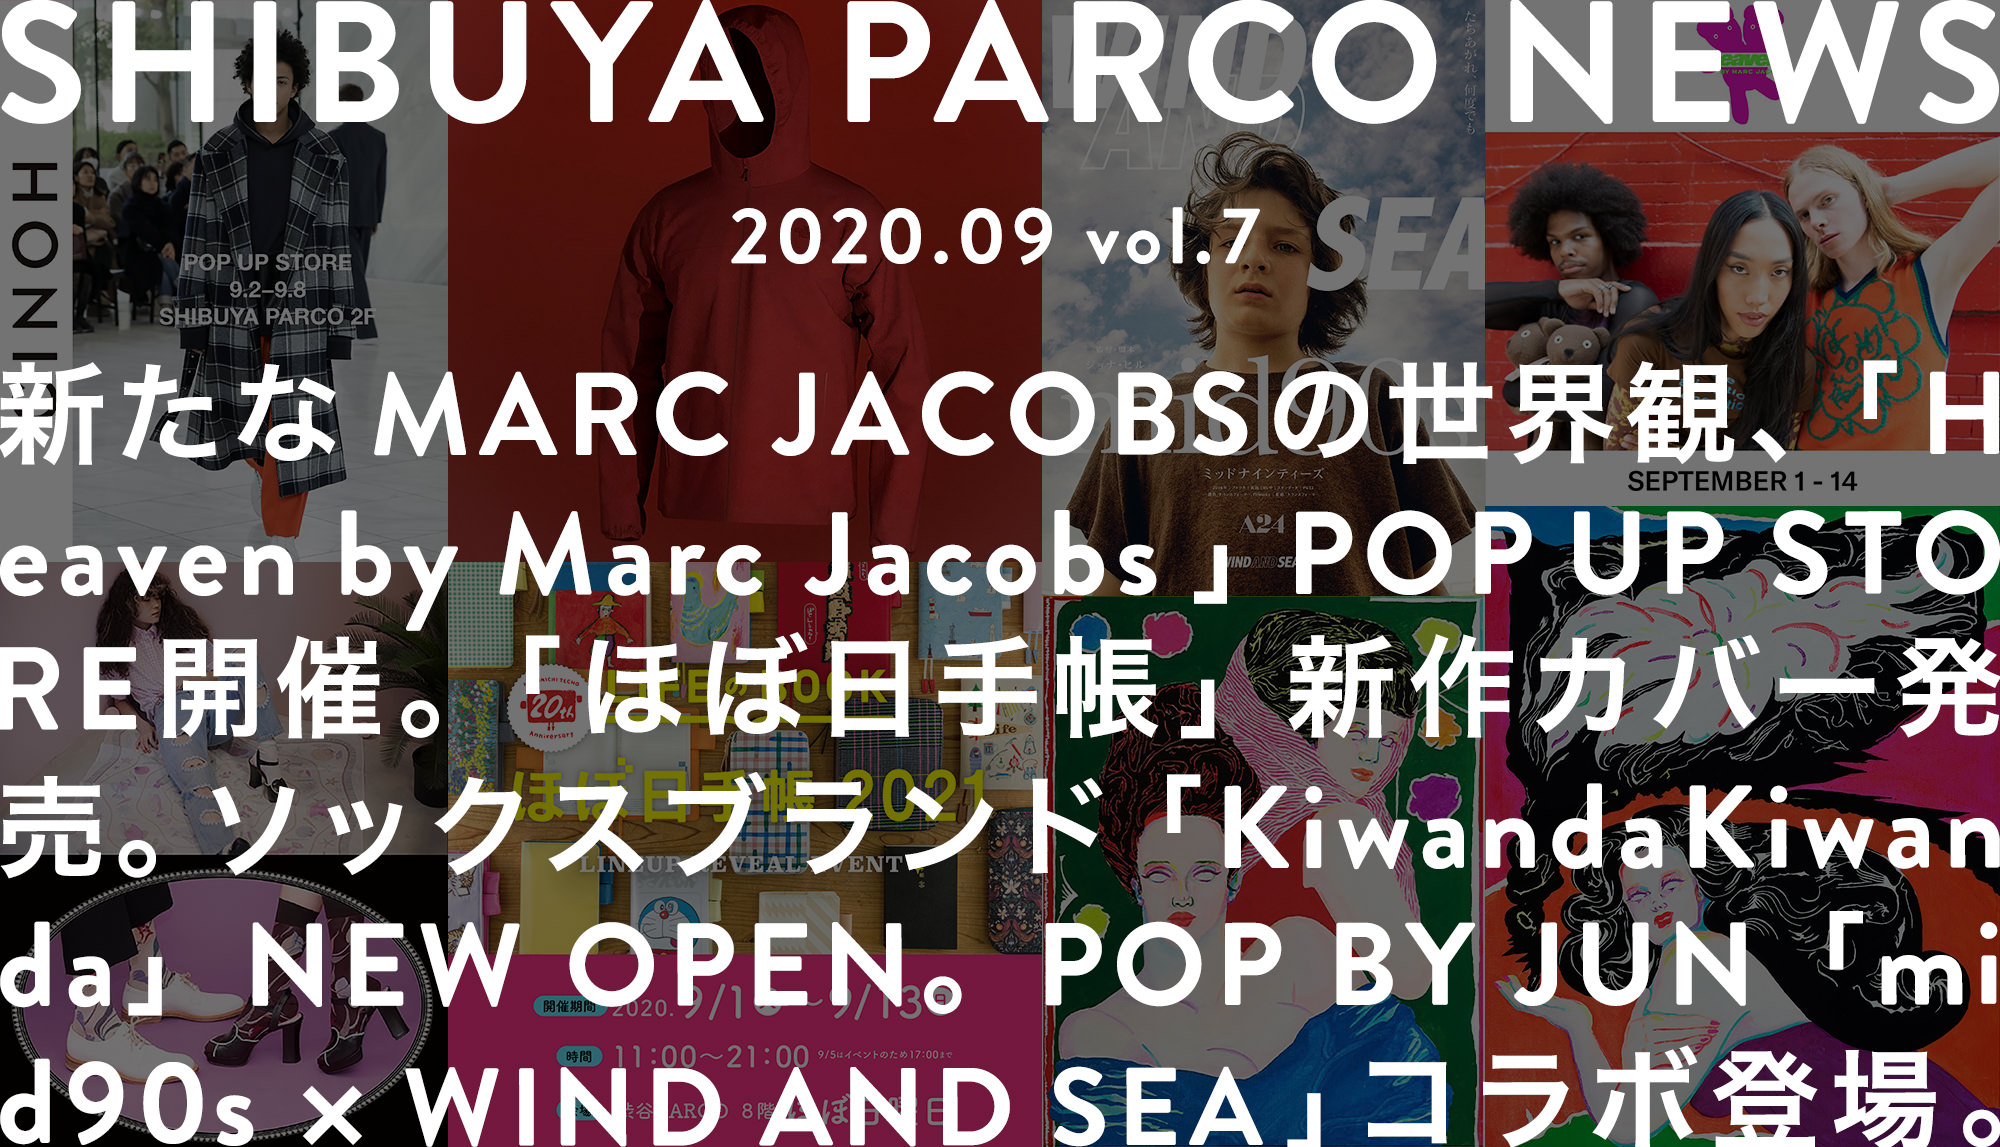 SHIBUYA PARCO NEWS ―2020.9― vol.7